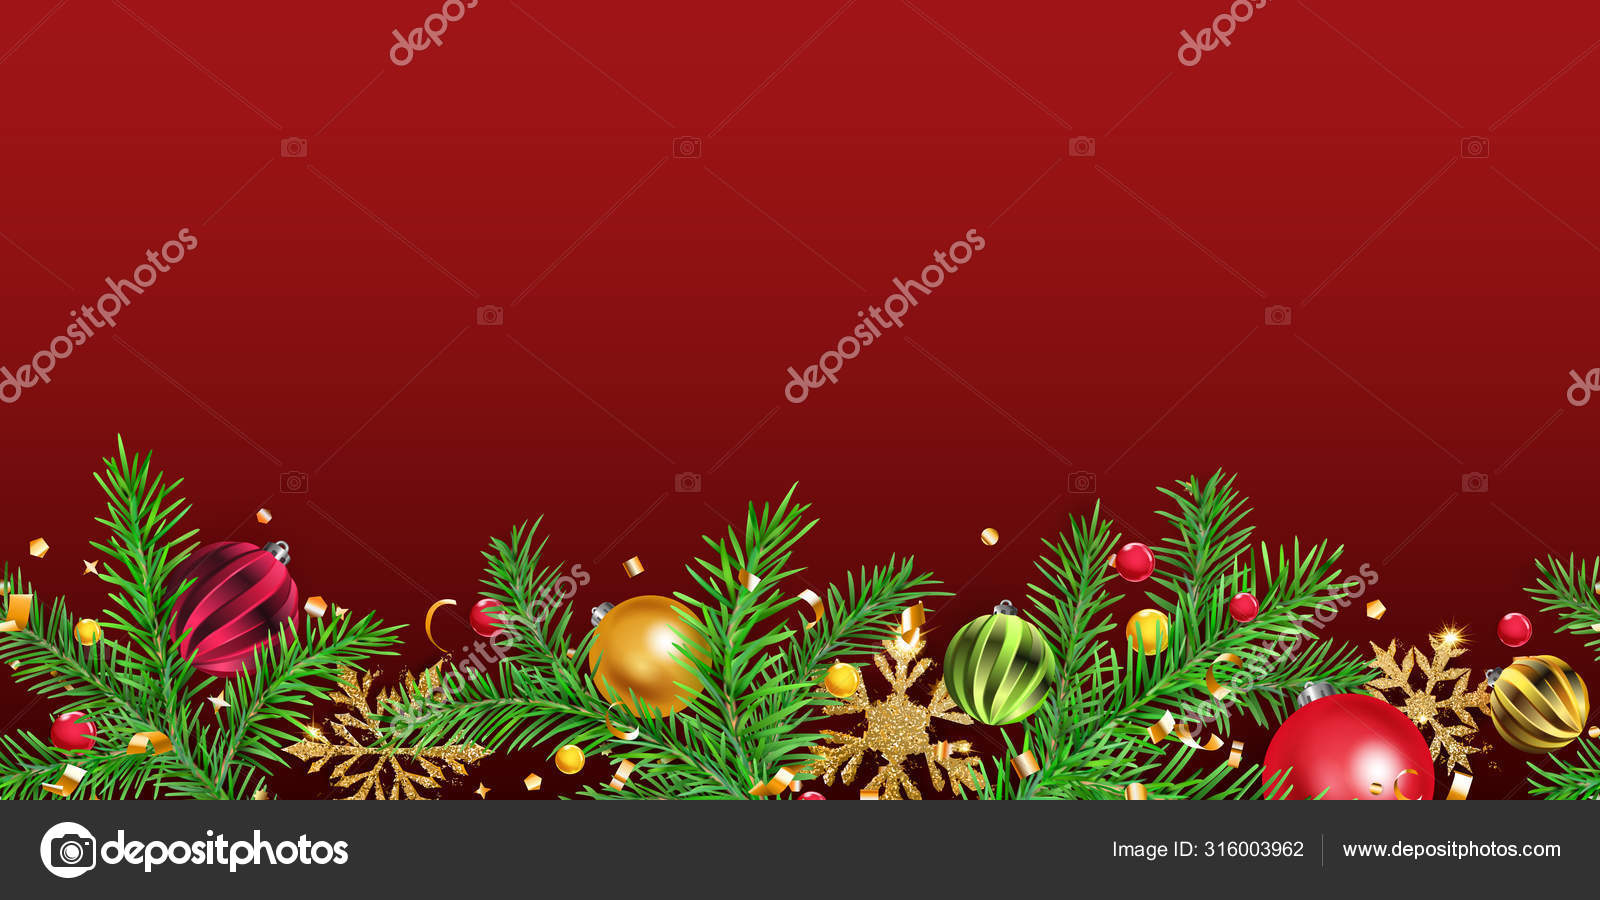 Weihnachten Hintergrund Mit Tannenzweigen Vektorgrafik Lizenzfreie Grafiken C 31moonlight31 Depositphotos